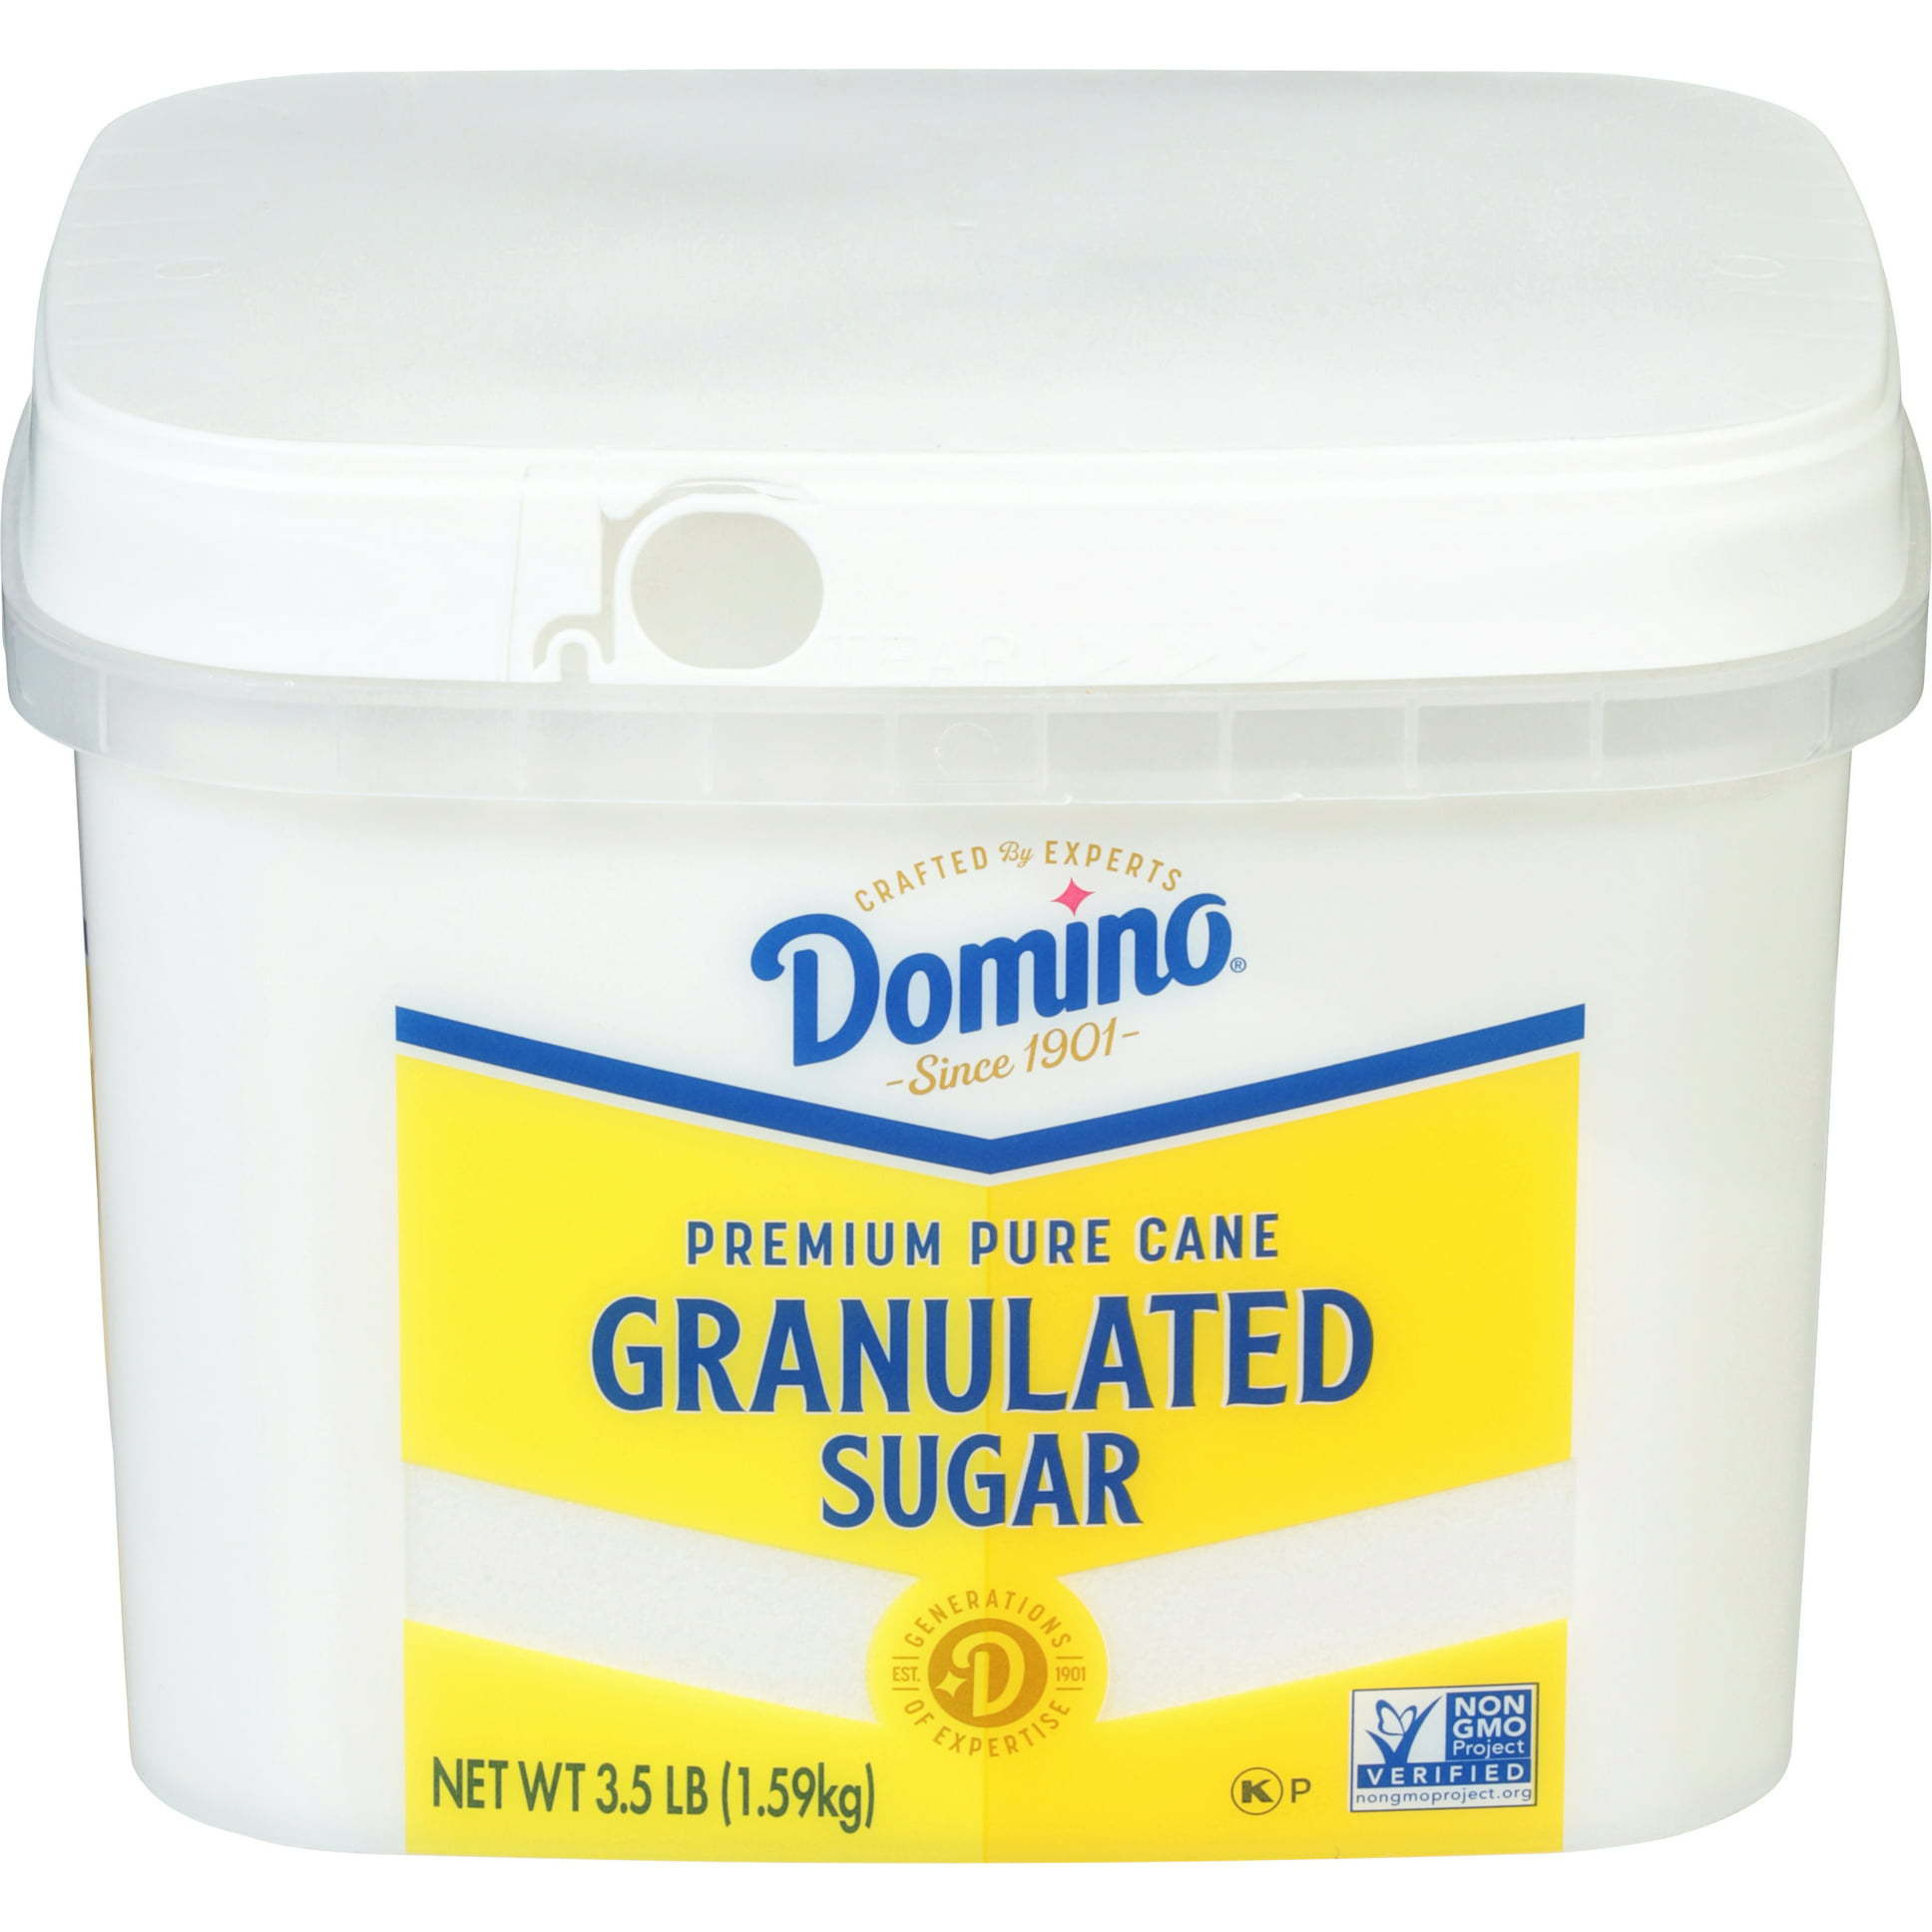 Case of 2 - Domino Pure Cane Granulated Sugar Tub - 3.5 Lb (1.59 Kg)